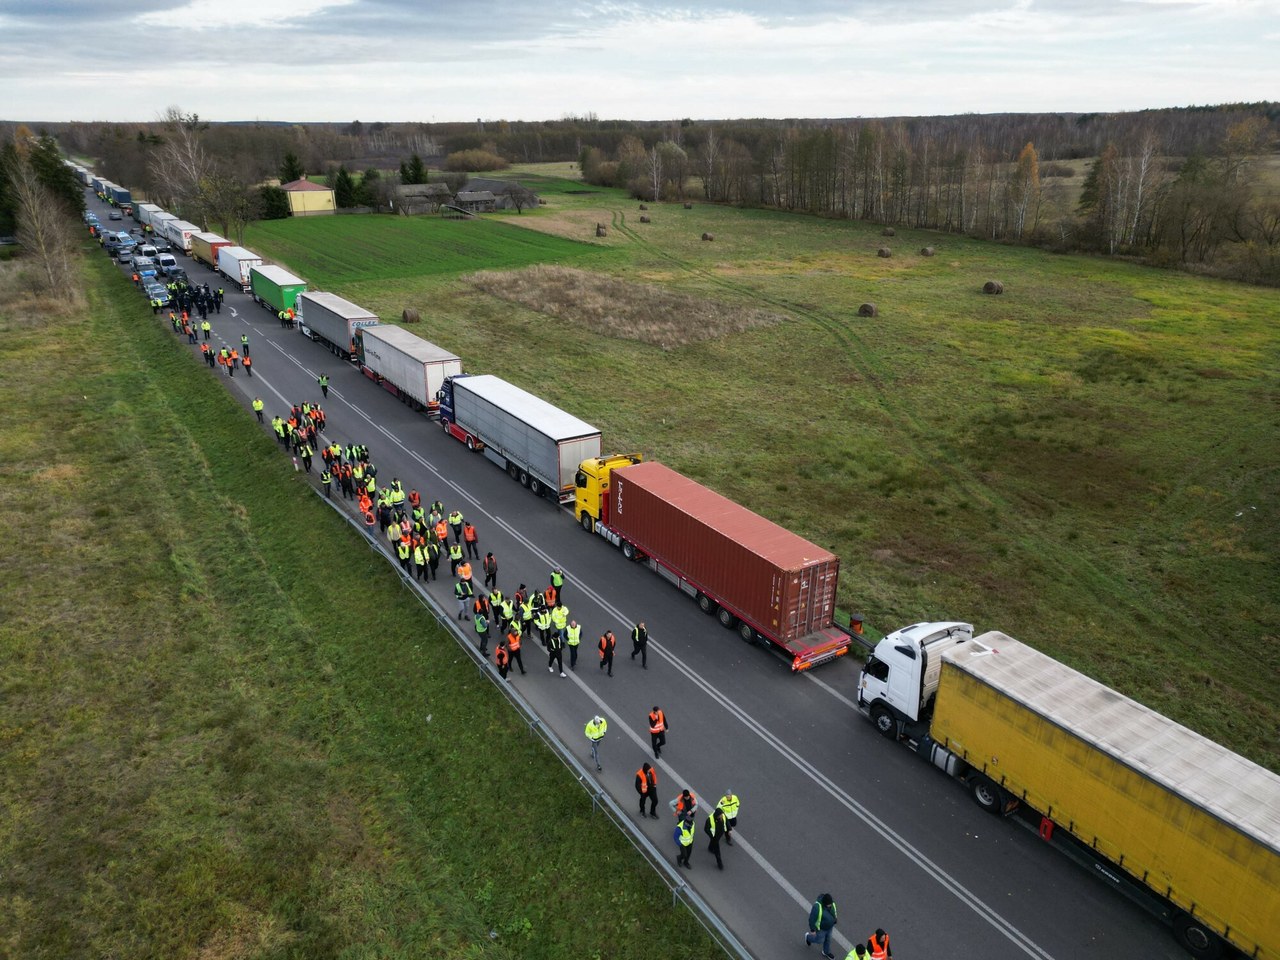 Ukraina żąda natychmiastowego odblokowania granicy. Skargi Kijowa w Brukseli